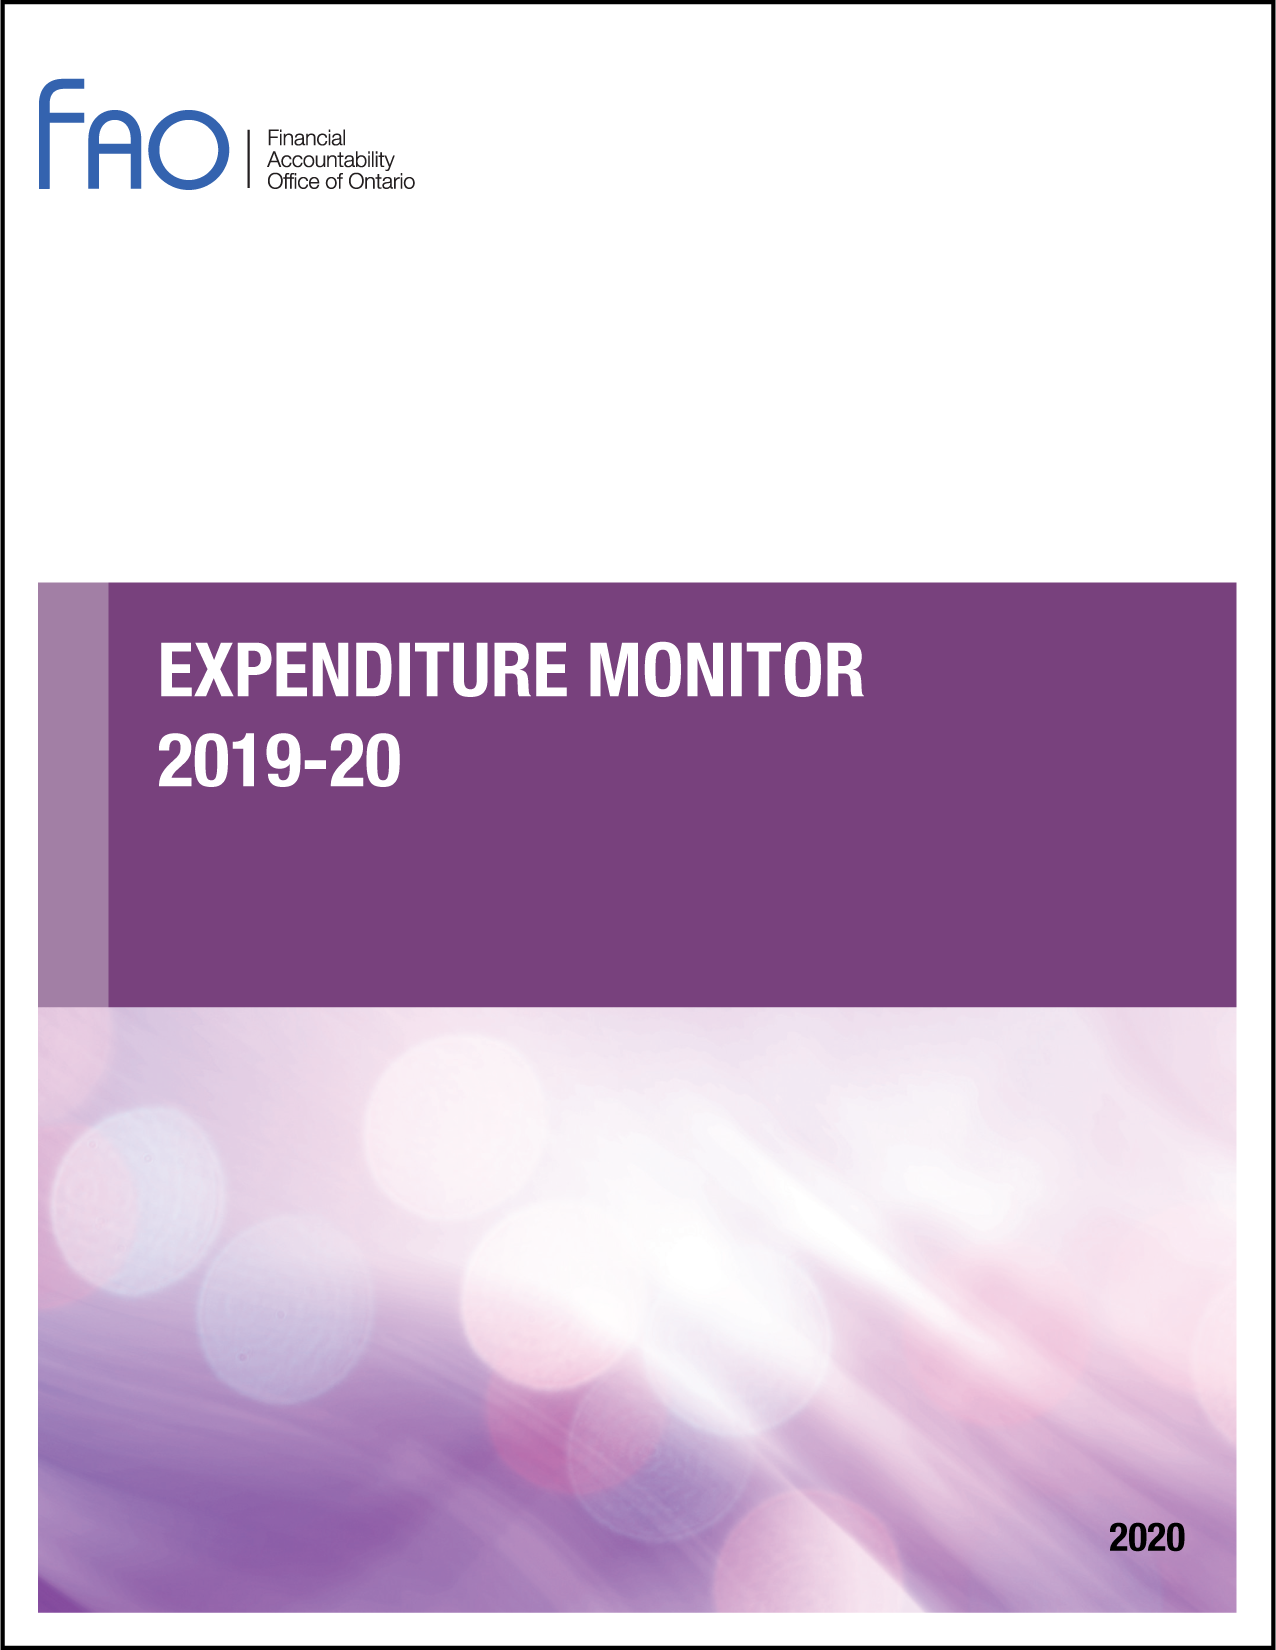 Expenditure Monitor 2019-20: Q3